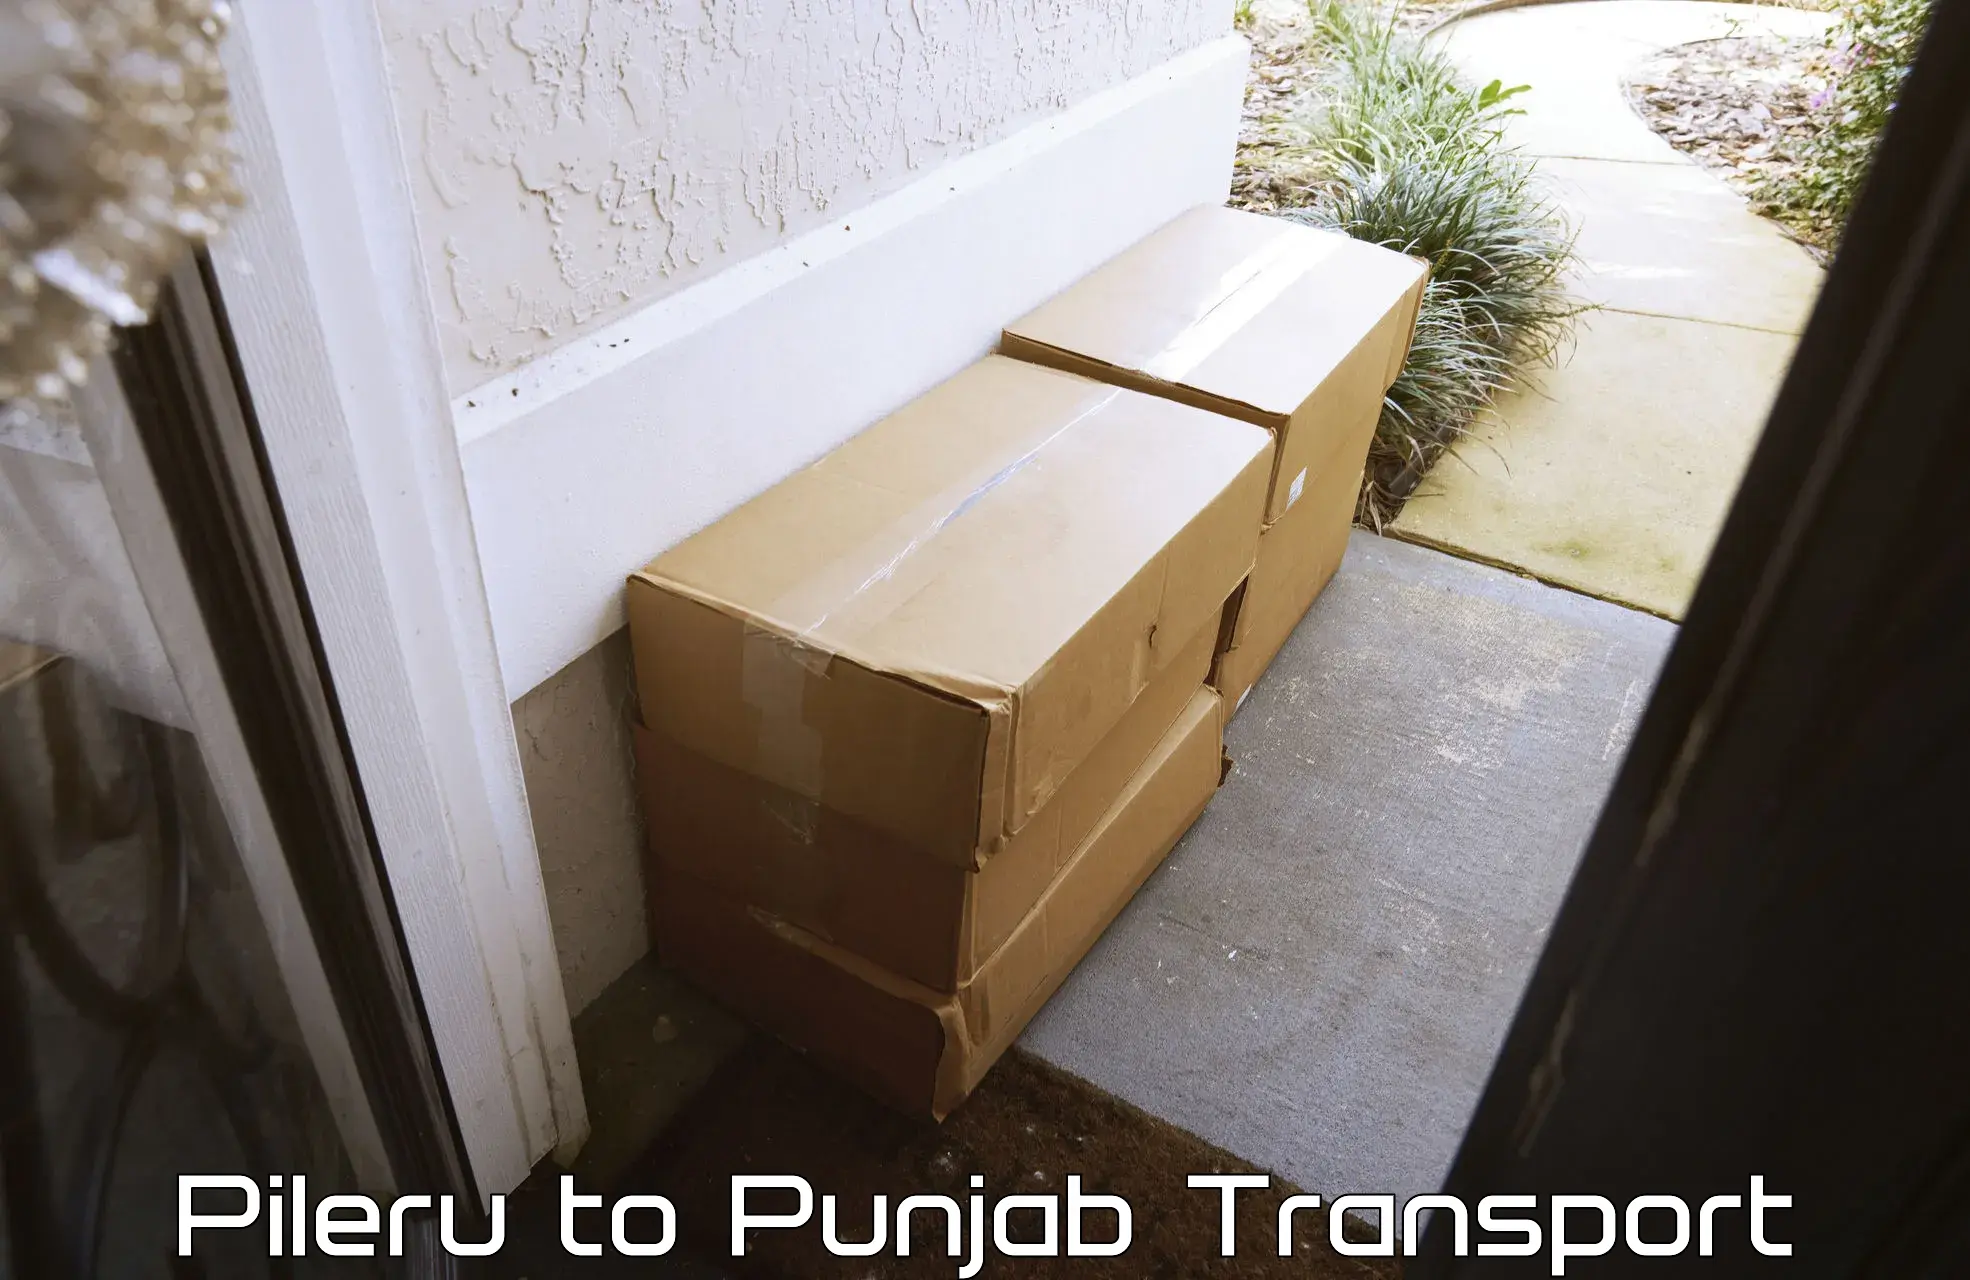 Two wheeler parcel service Pileru to Punjab